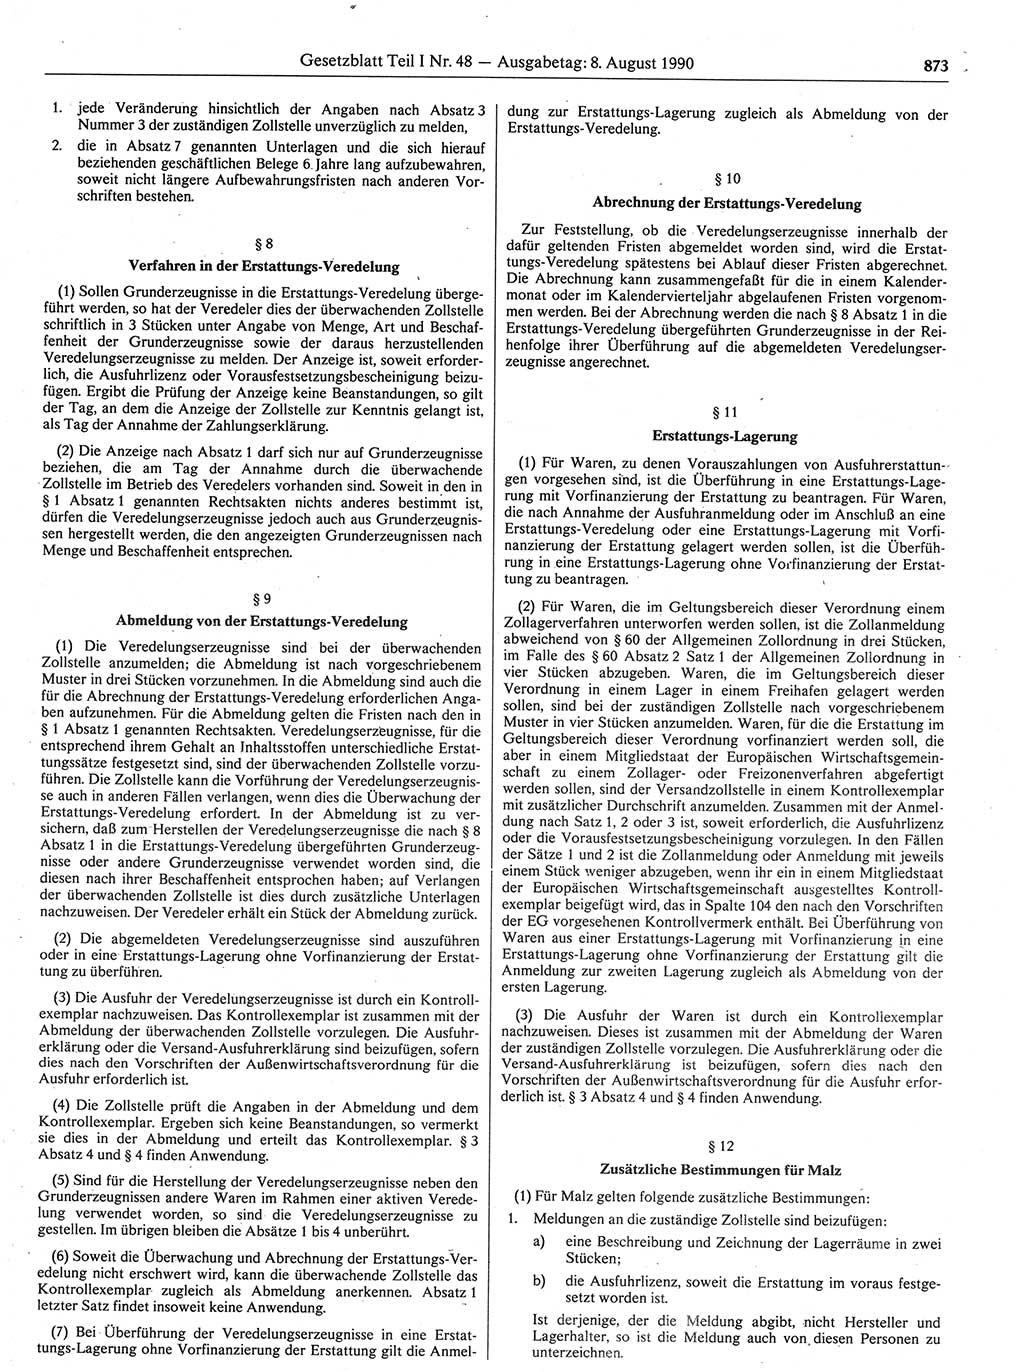 Gesetzblatt (GBl.) der Deutschen Demokratischen Republik (DDR) Teil Ⅰ 1990, Seite 873 (GBl. DDR Ⅰ 1990, S. 873)